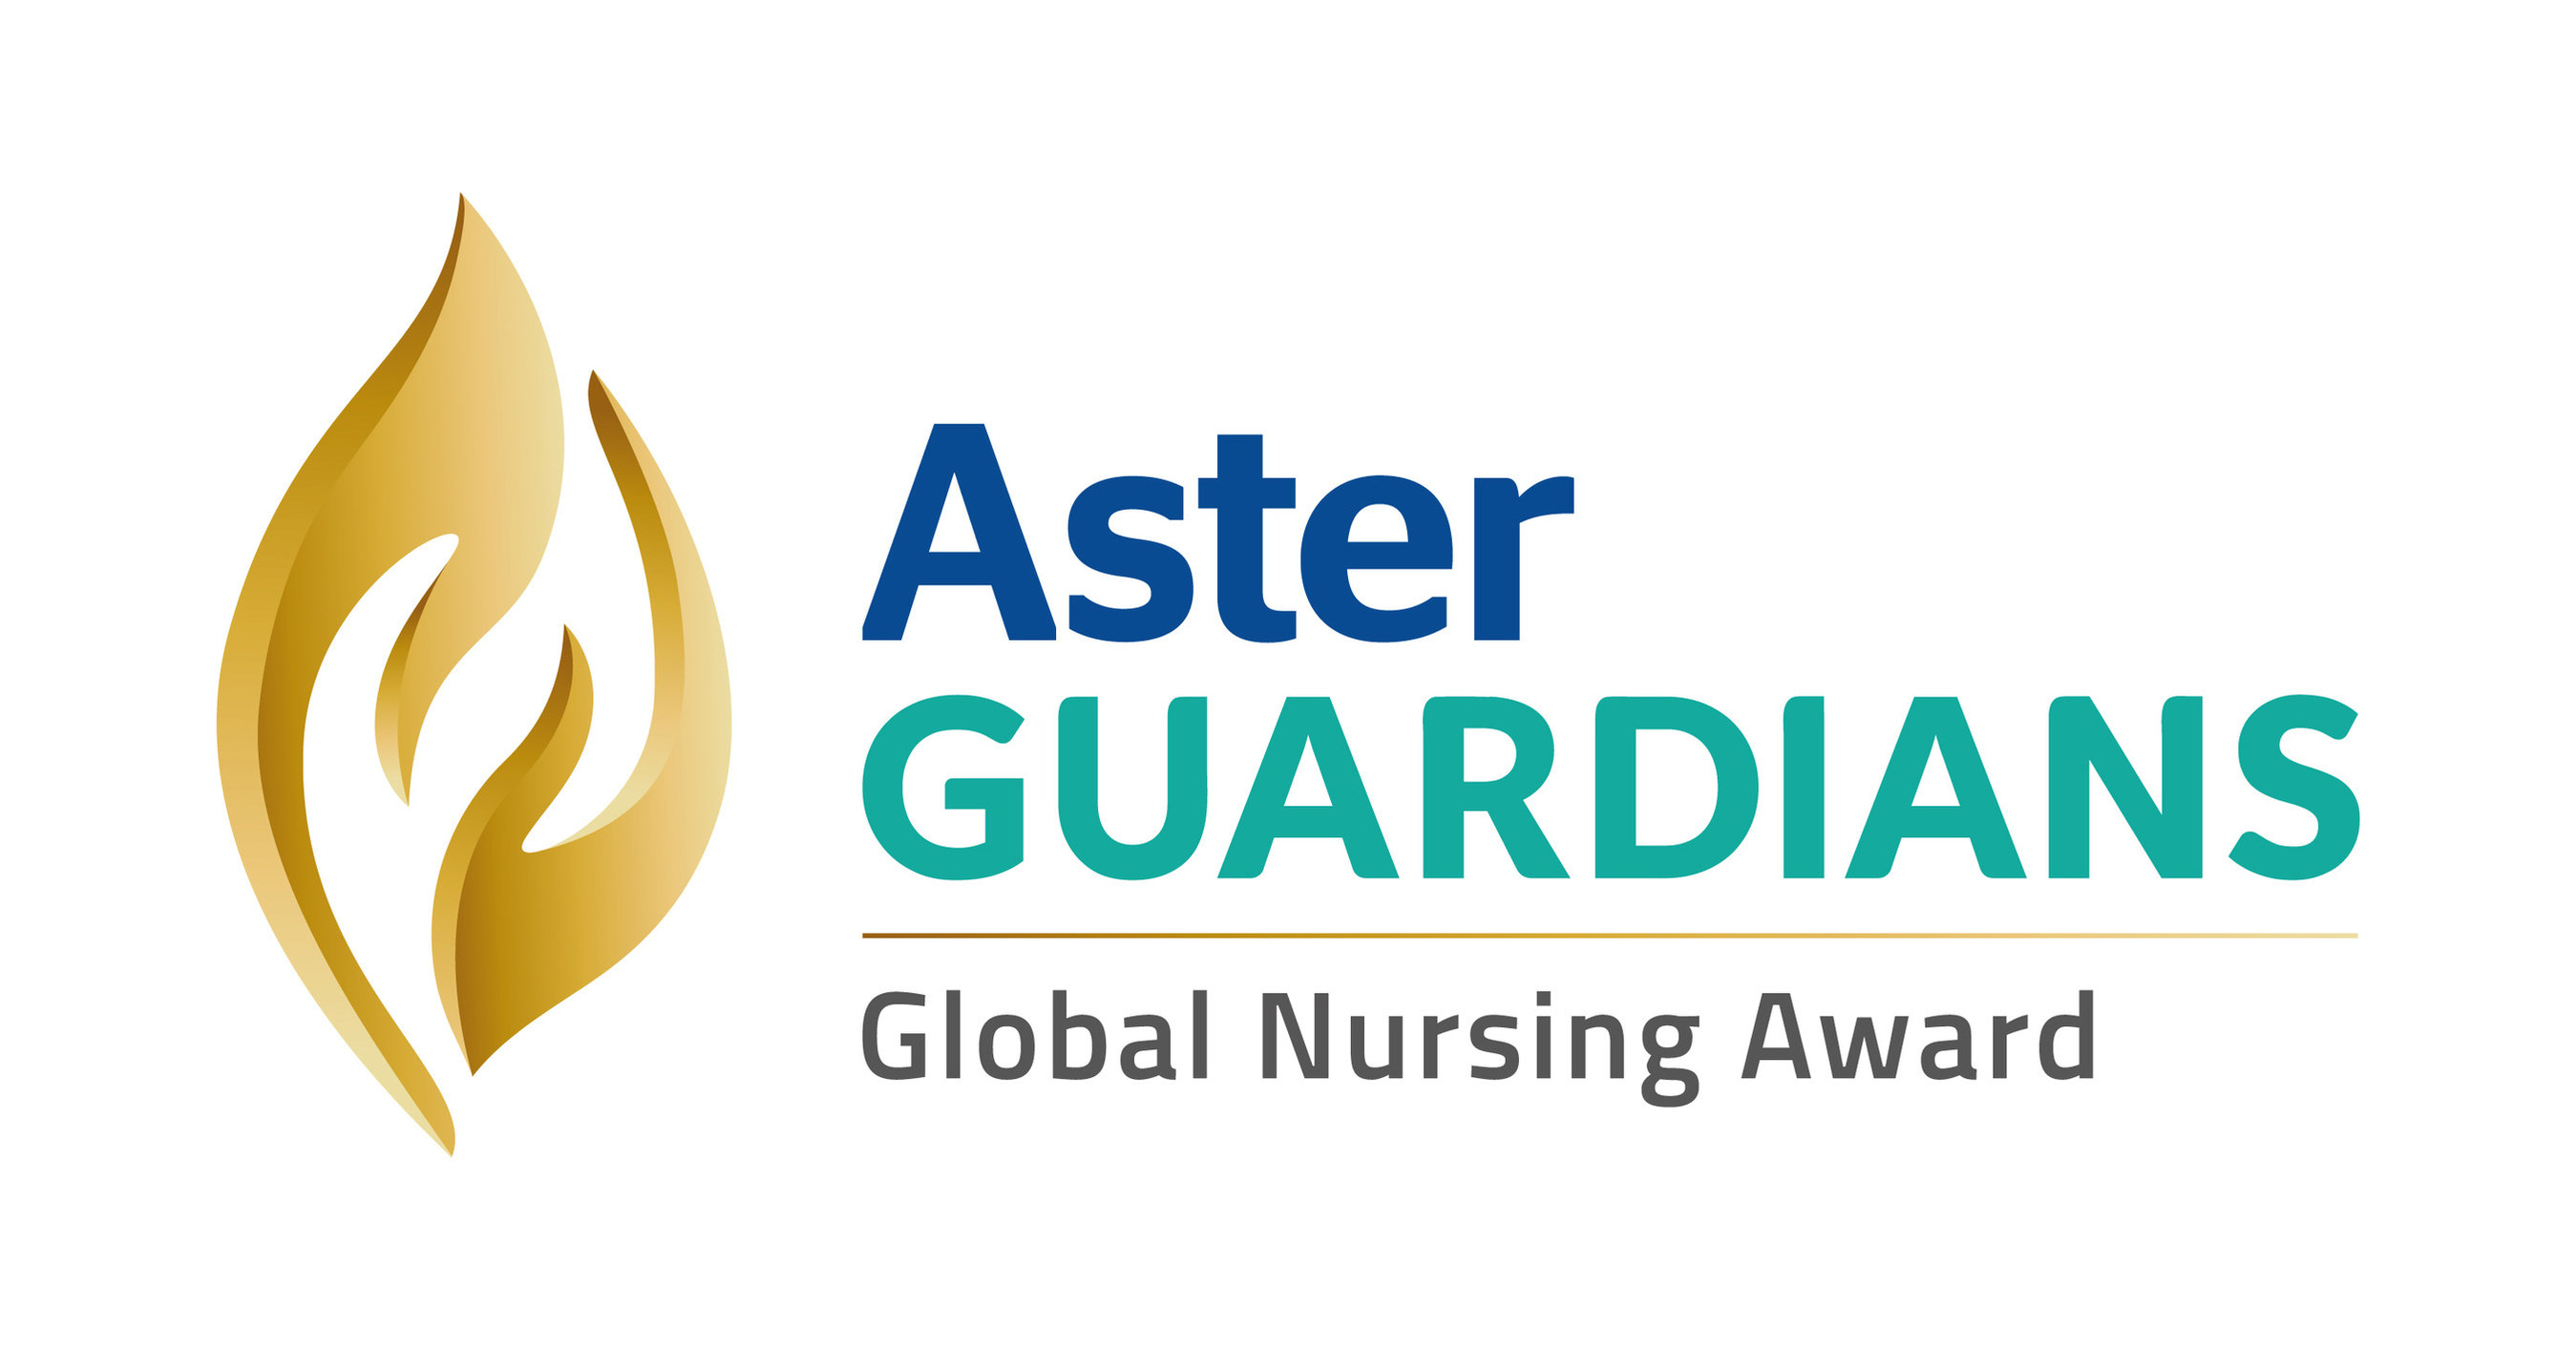 La date limite de soumission des candidatures pour le prix Aster Guardians Global Nursing 2023 ayant une valeur de 250 000 de dollars prolongée jusqu'au 12 décembre